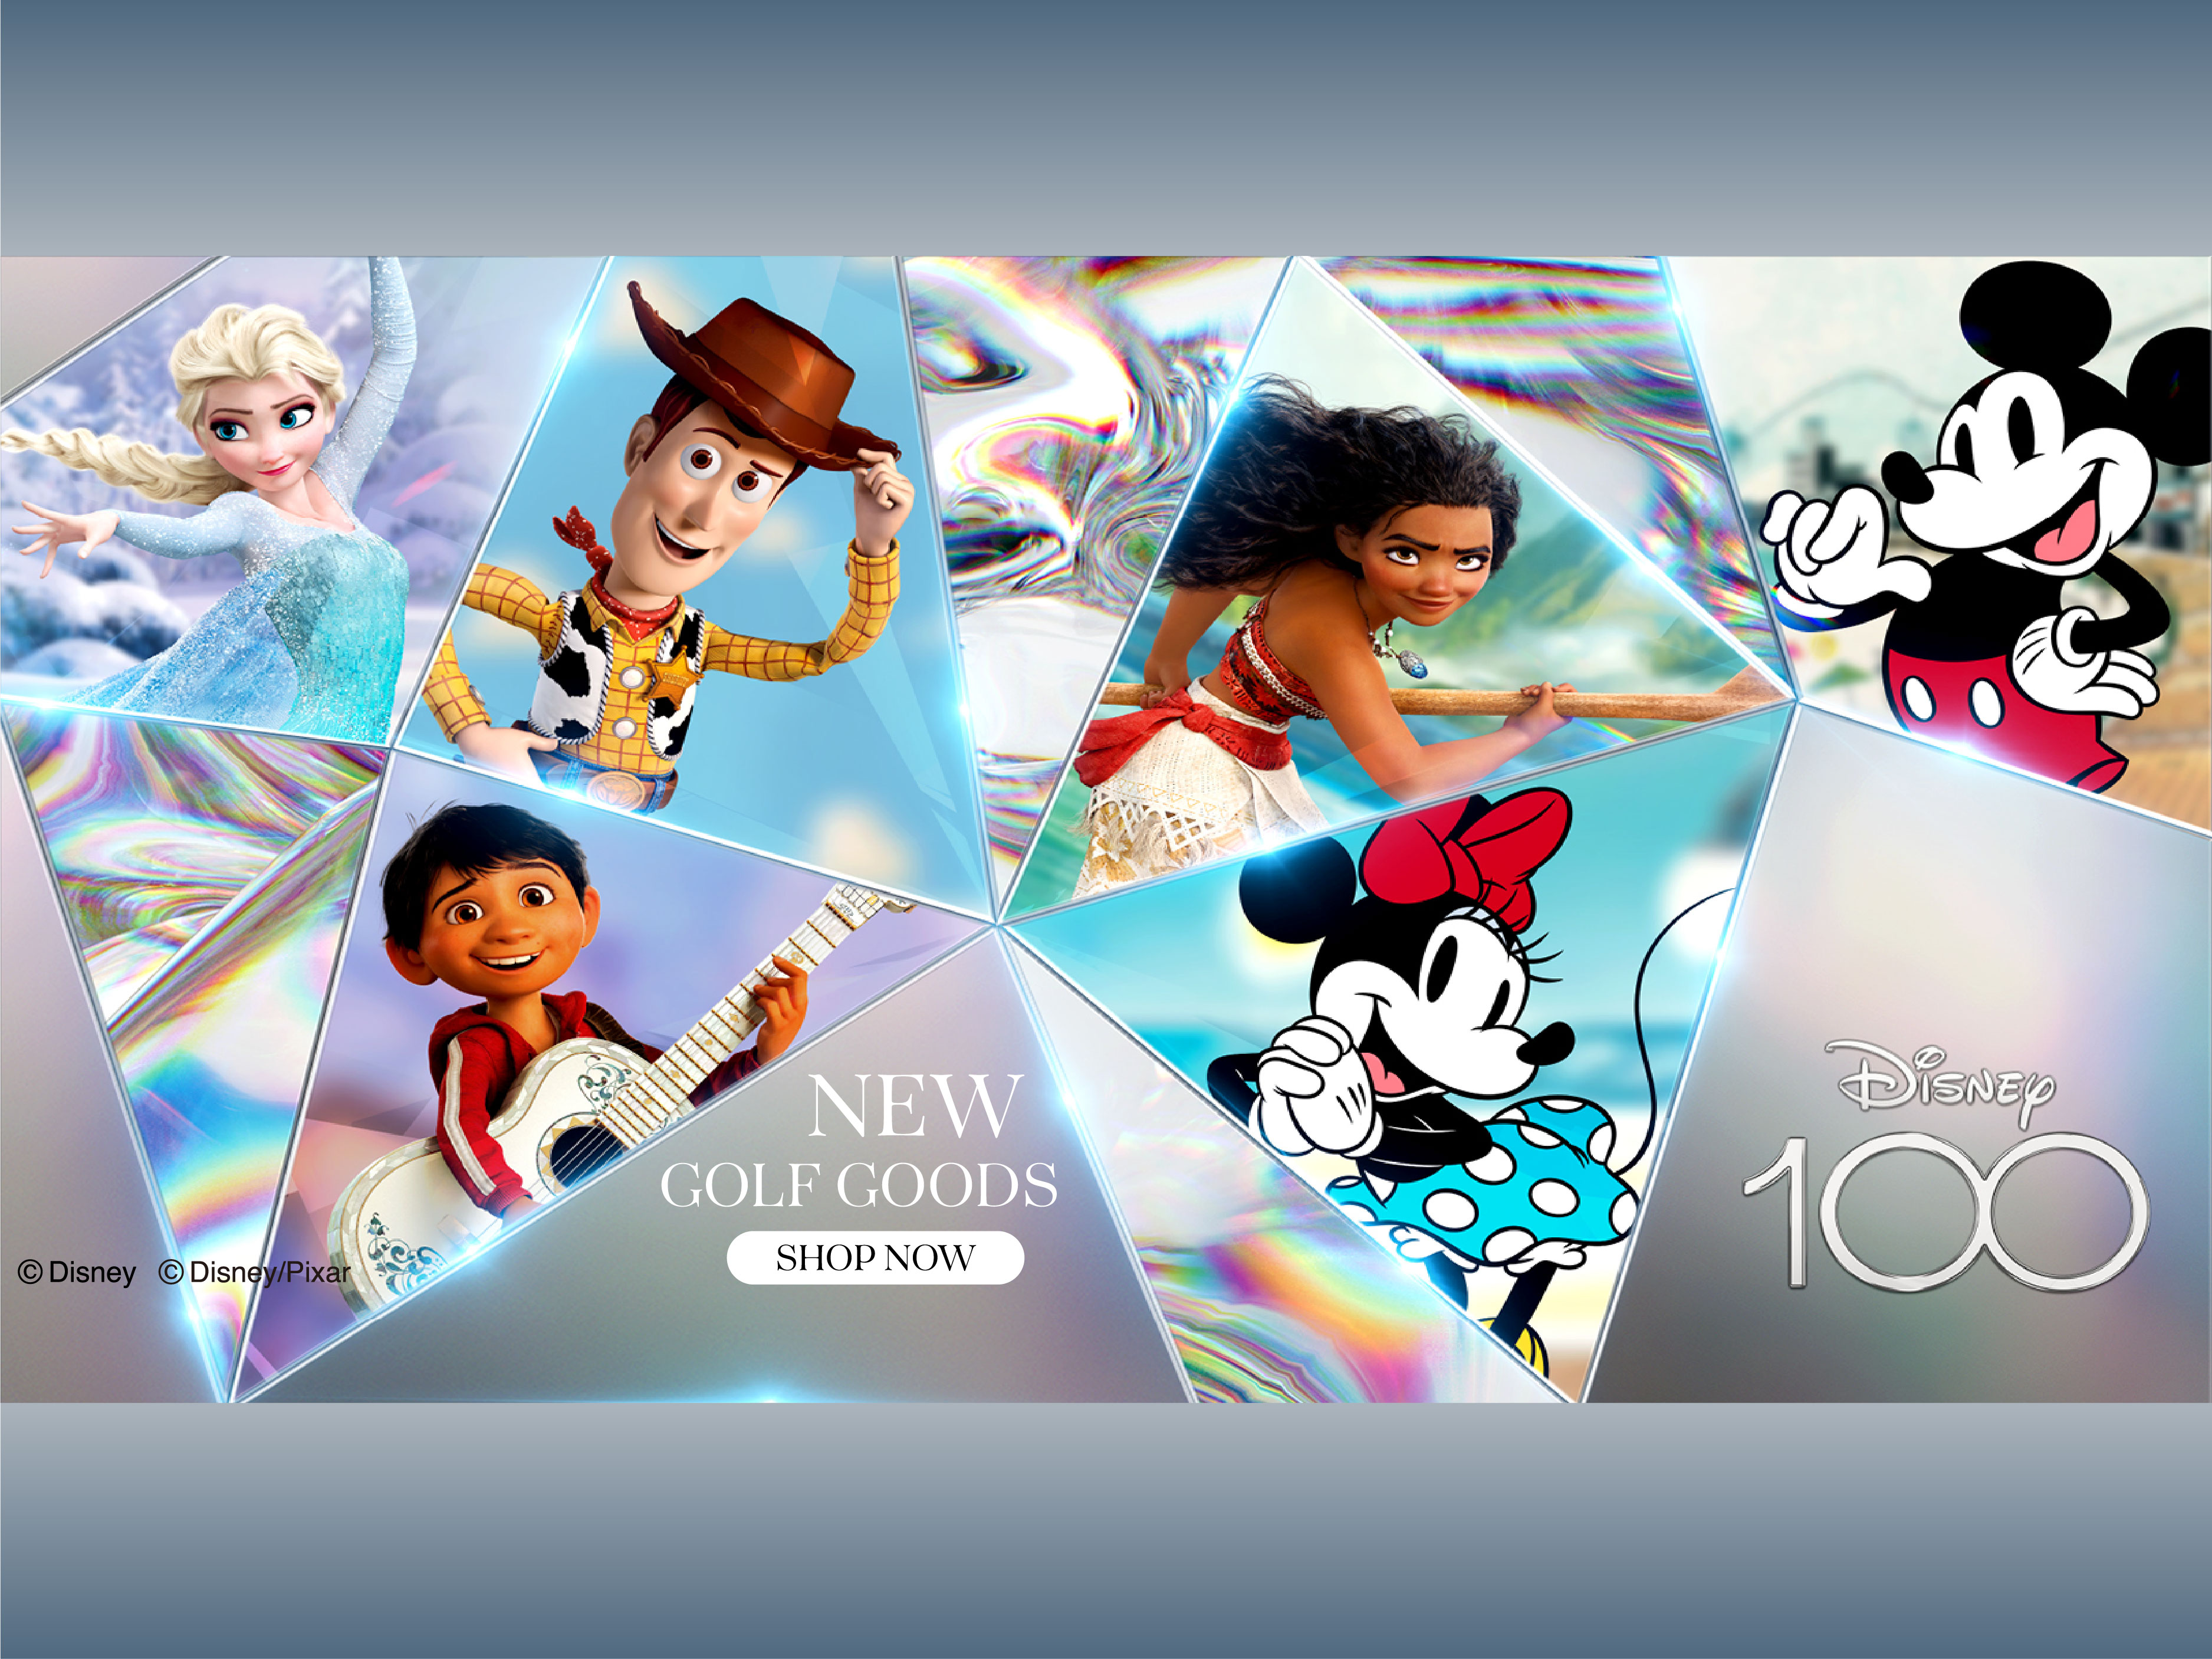 Disney100。100周年を記念したコレクション登場！